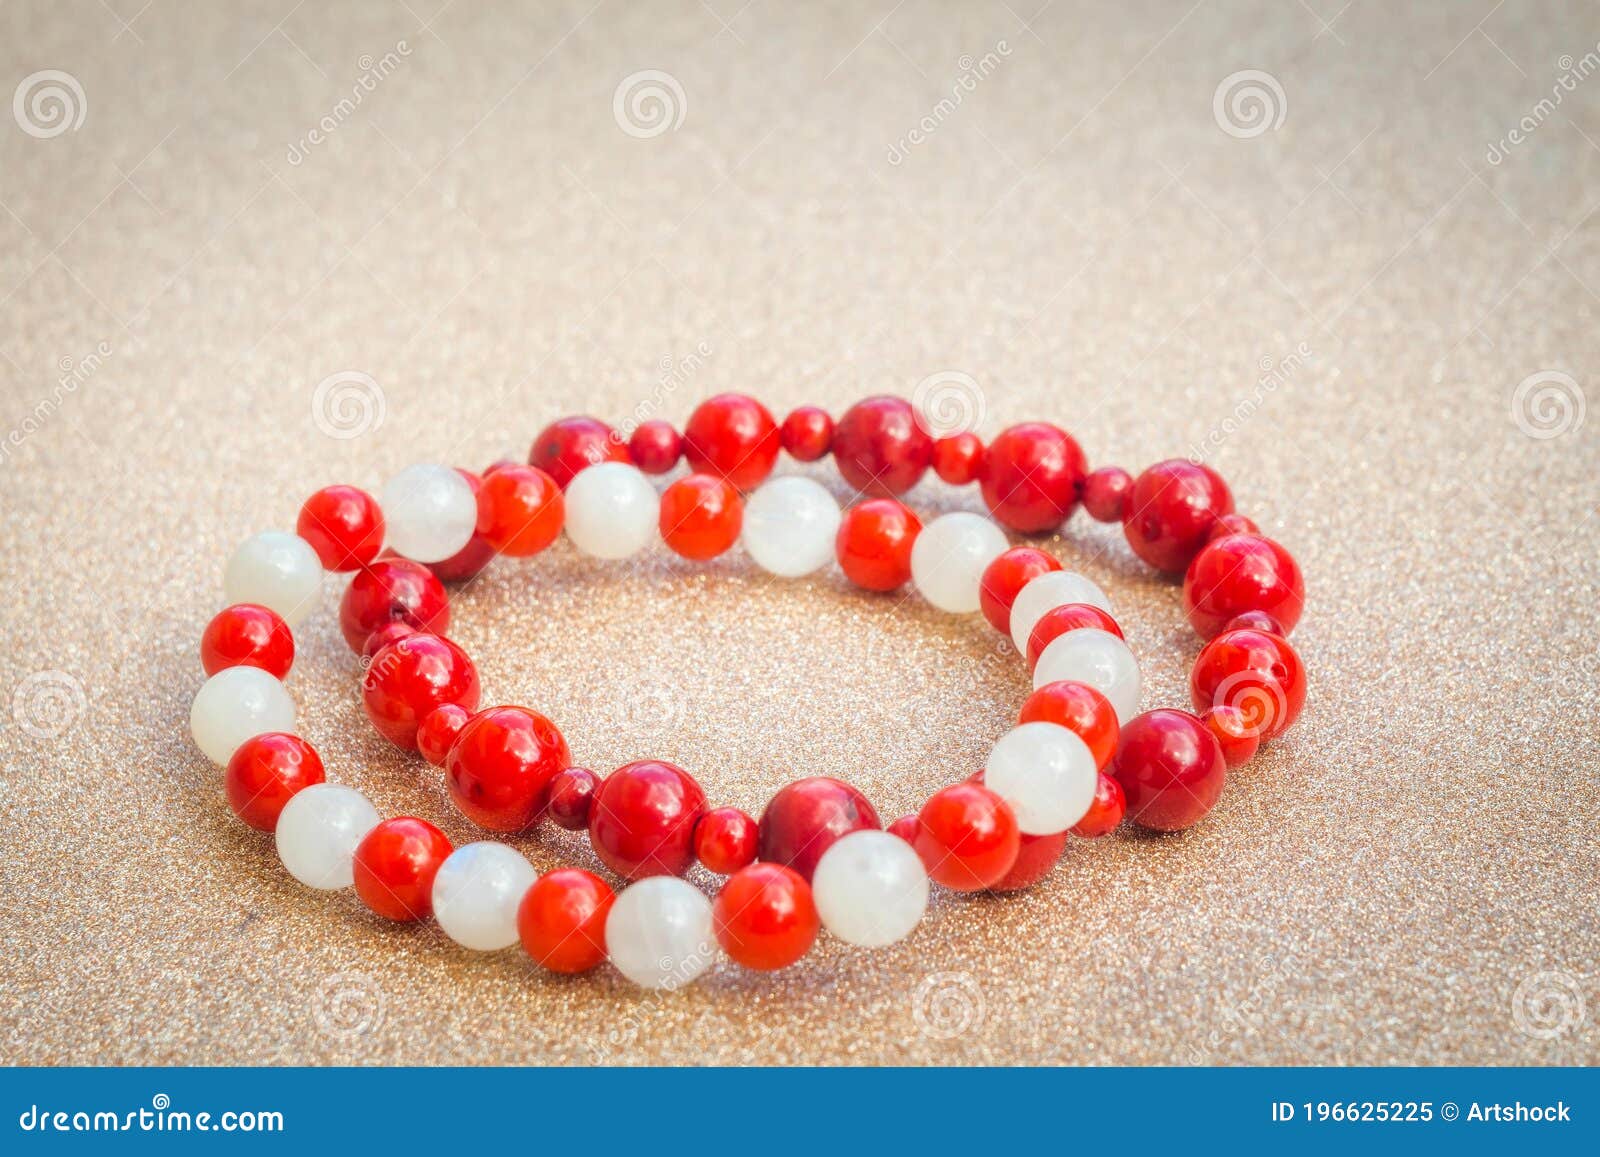 white moon stone & red jasper bracelet